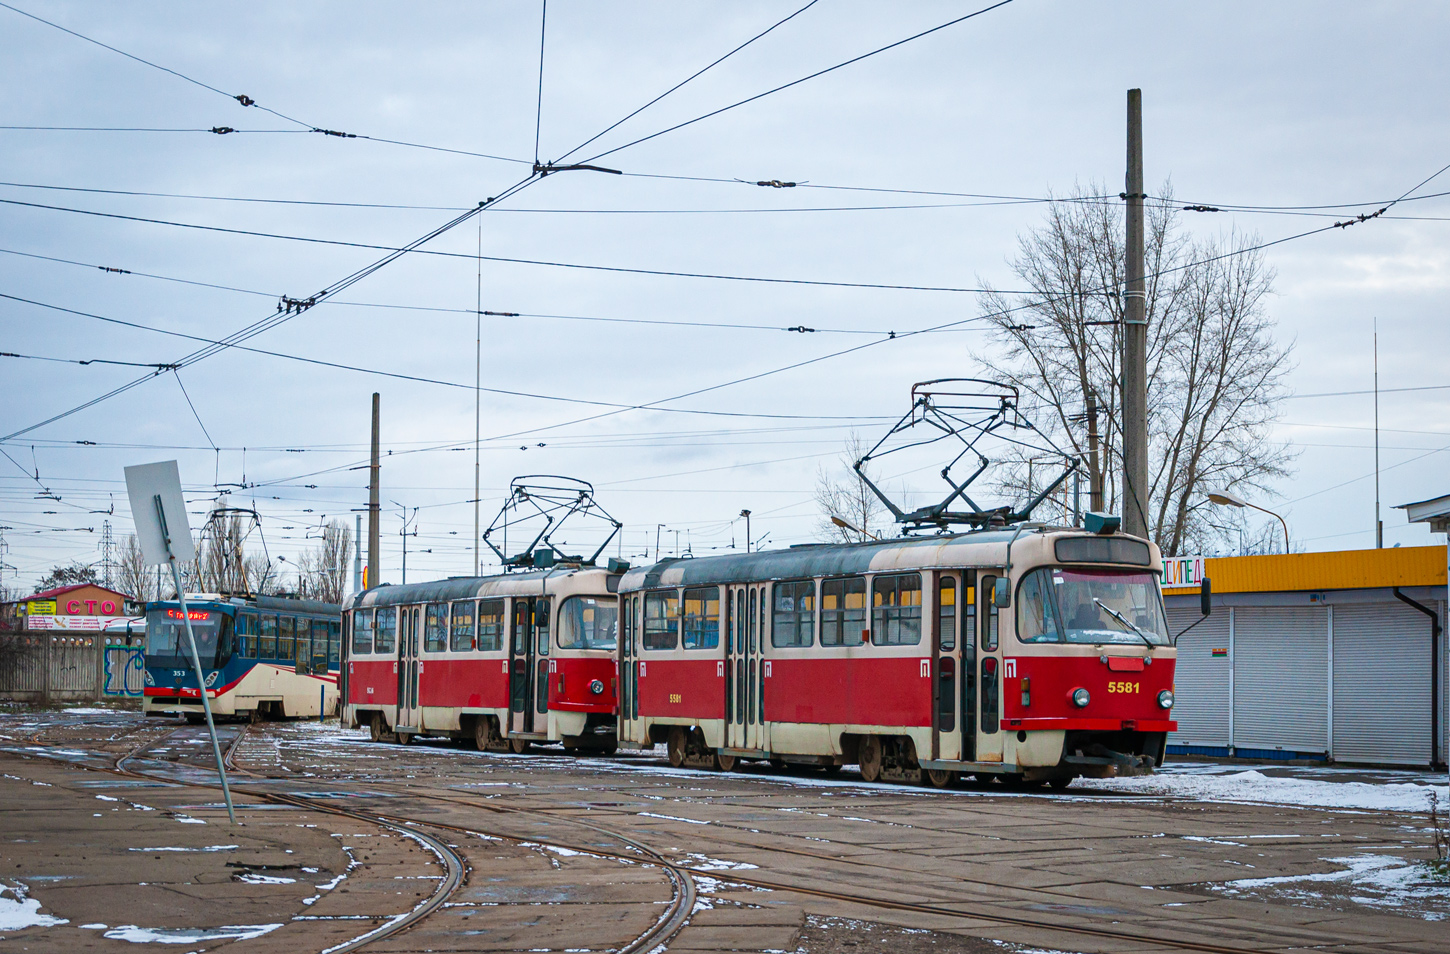 Kiova, Tatra T3SUCS # 5581